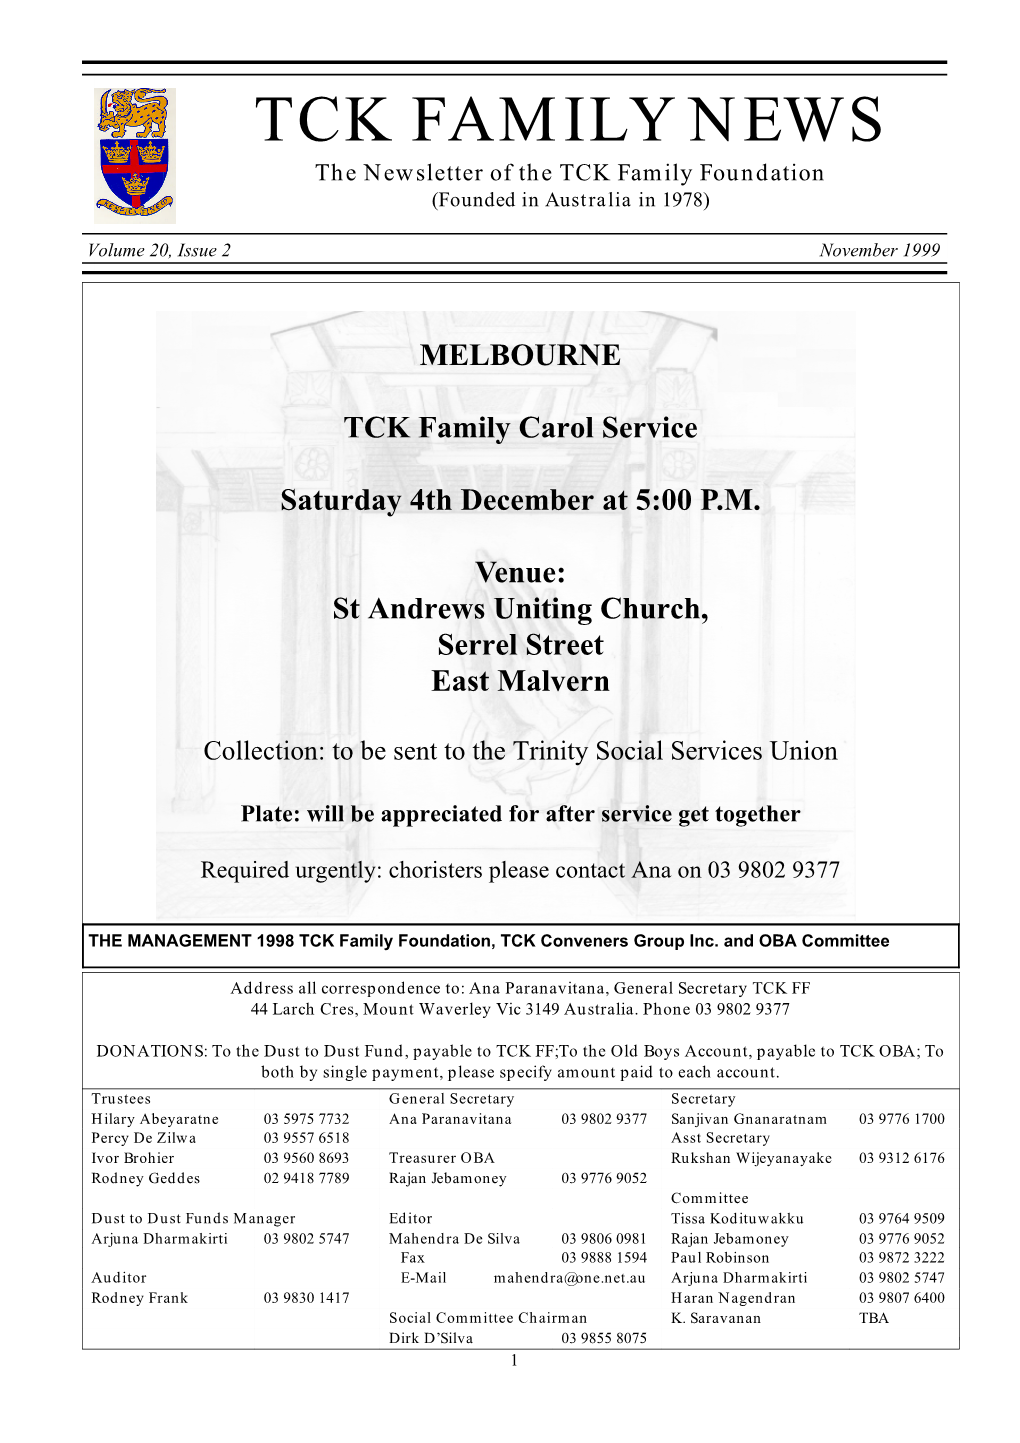 TCK FAMILY NEWS the Newsletter of the TCK Family Foundation (Founded in Australia in 1978)